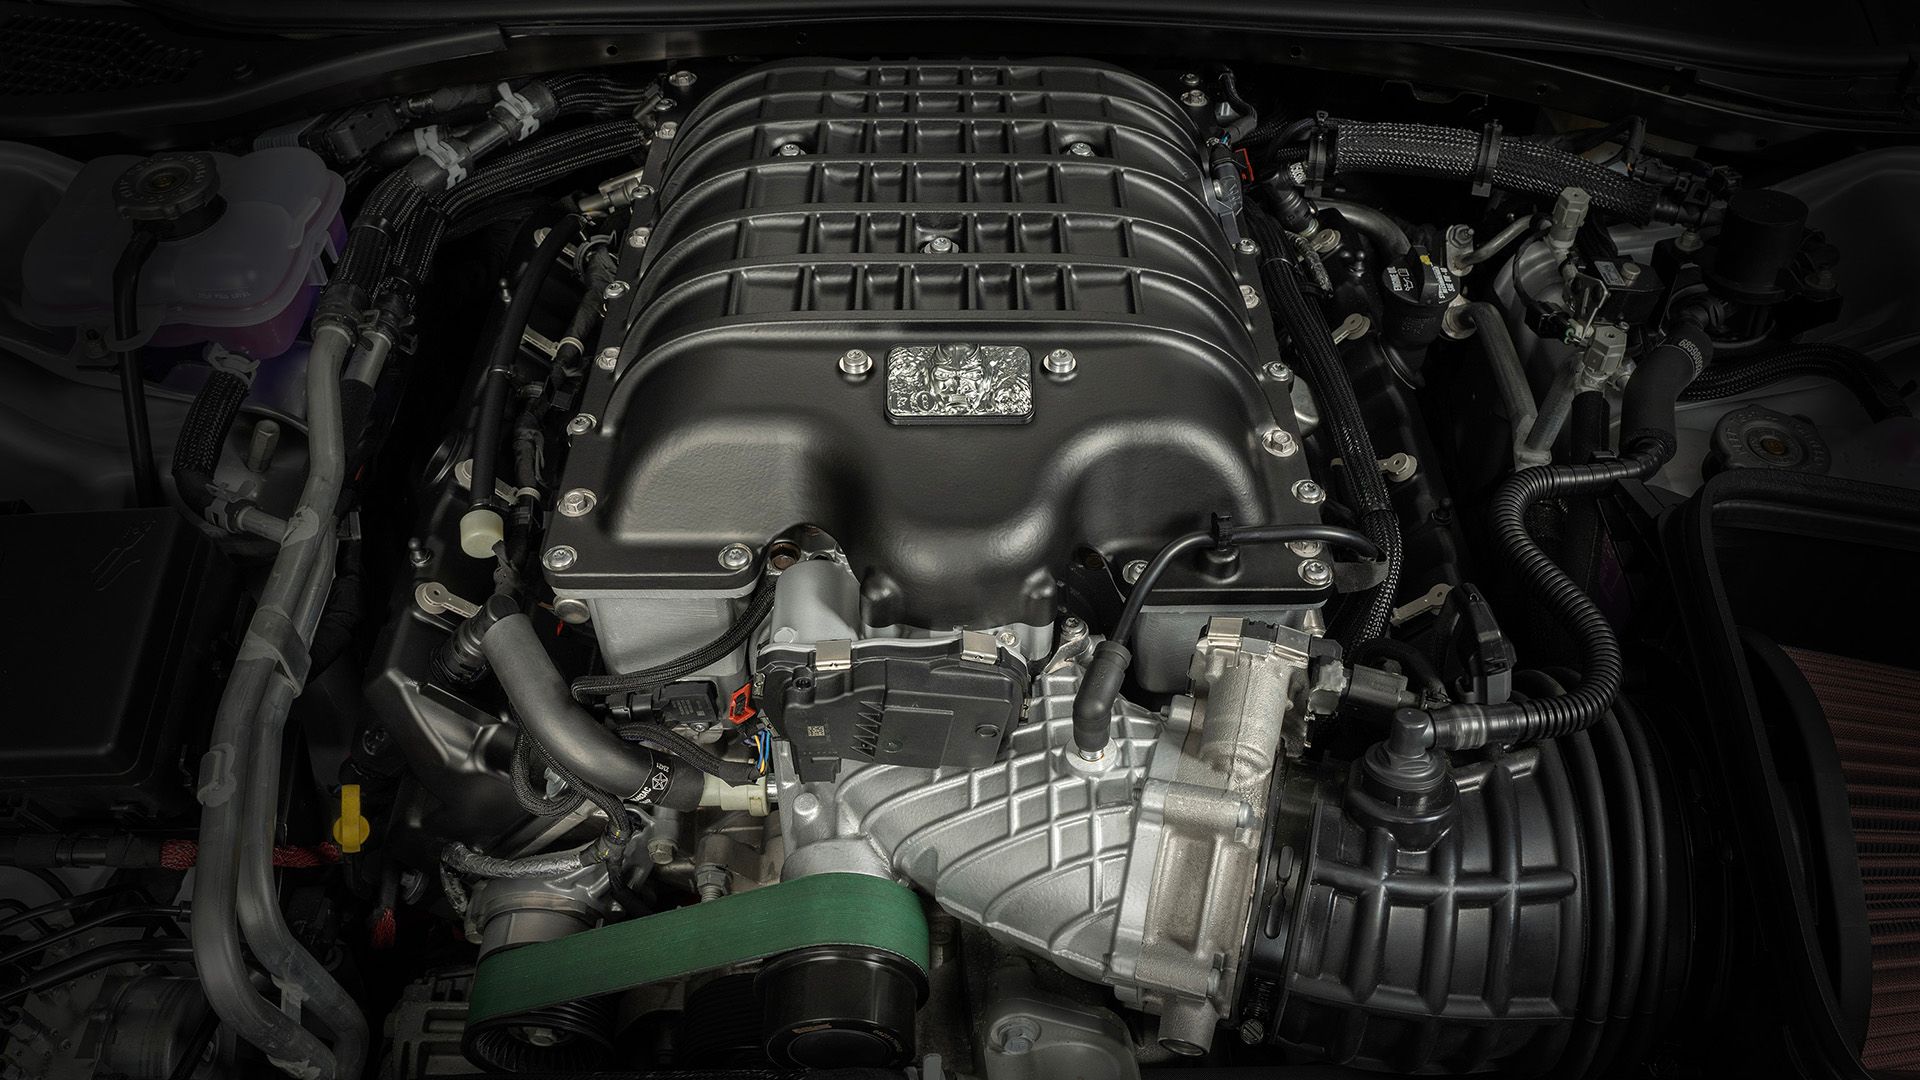 Engine of the 2023 Dodge Challenger SRT Demon 170 